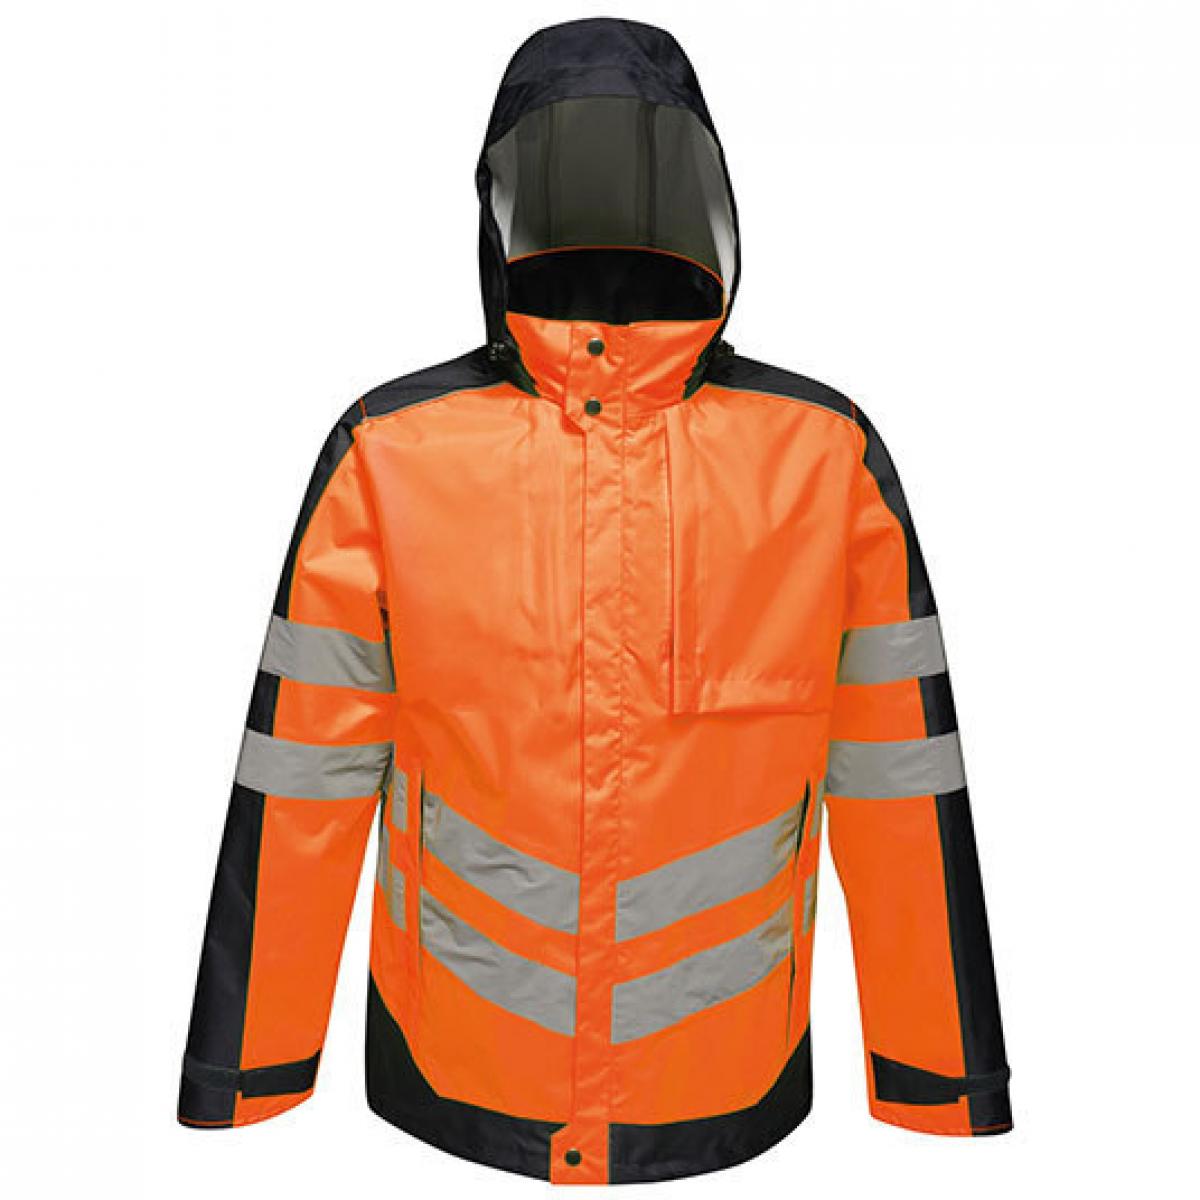 Hersteller: Regatta Herstellernummer: TRA341 Artikelbezeichnung: Herren Hi-Vis Pro Insulated Jacket, wasserdicht Farbe: Orange/Navy